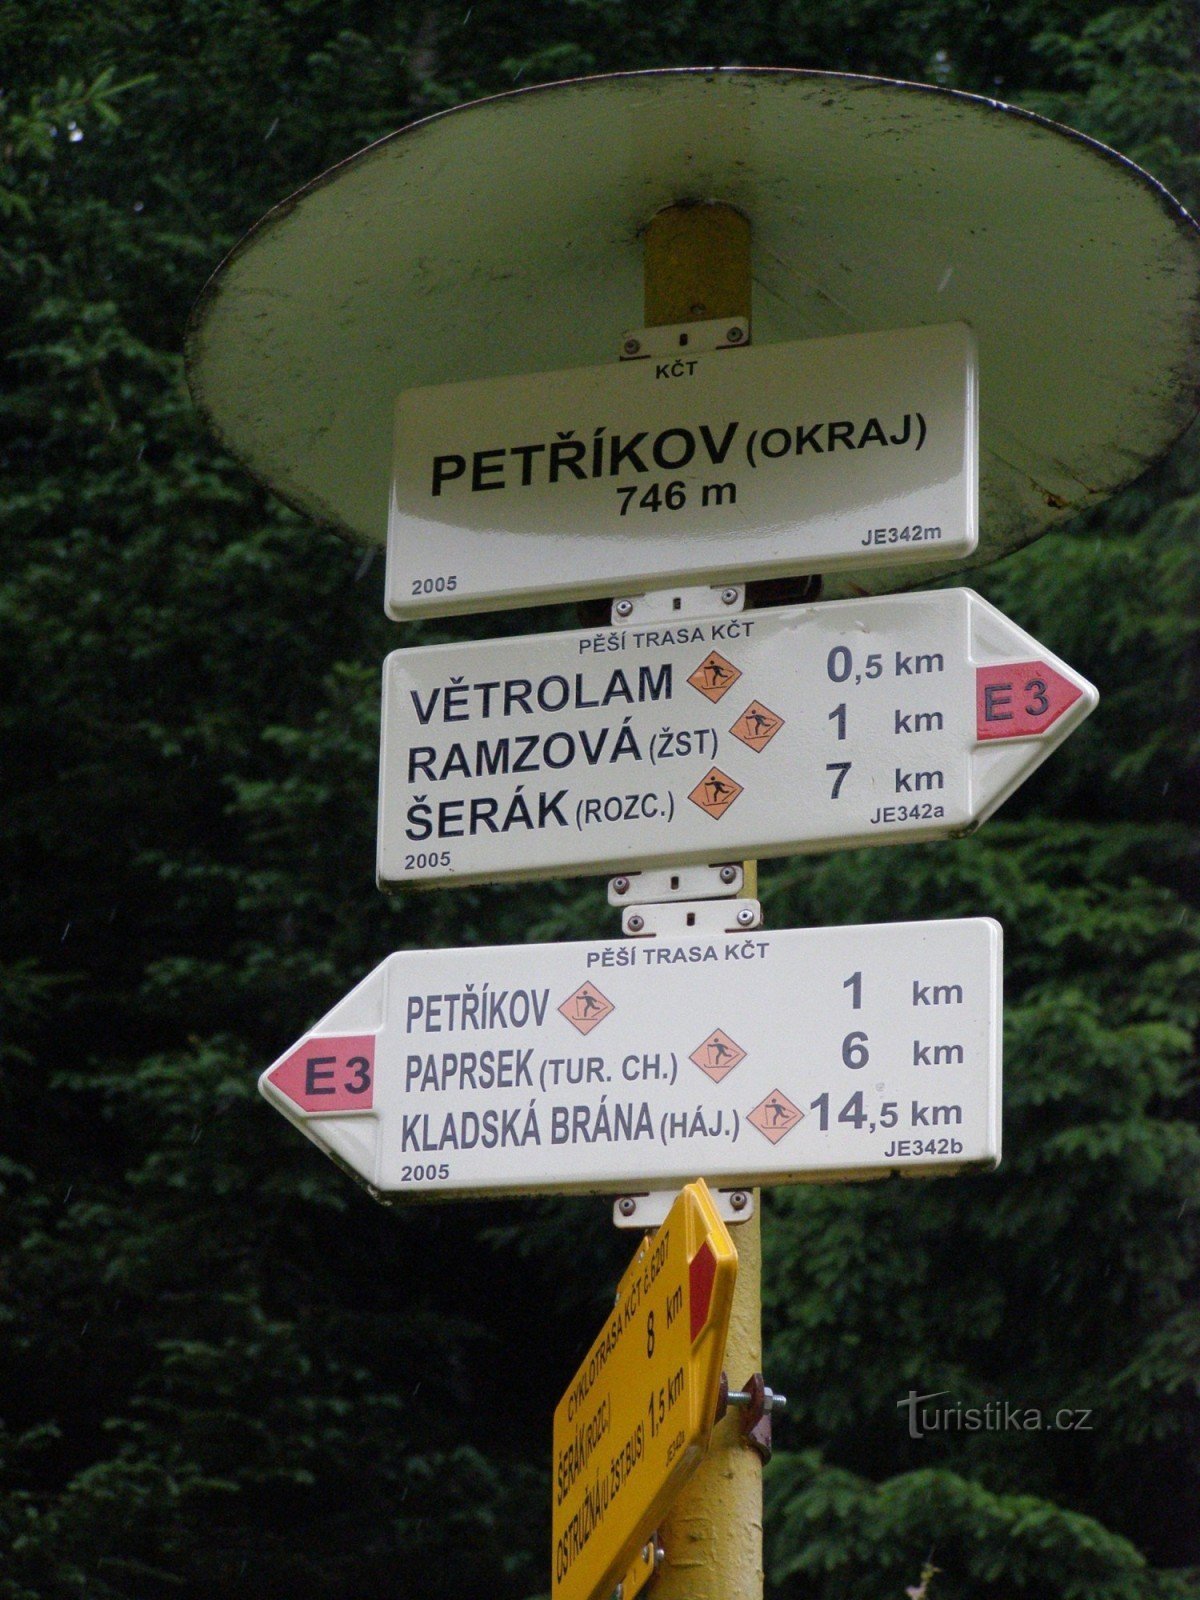 encruzilhada turística Petříkov (arredores)